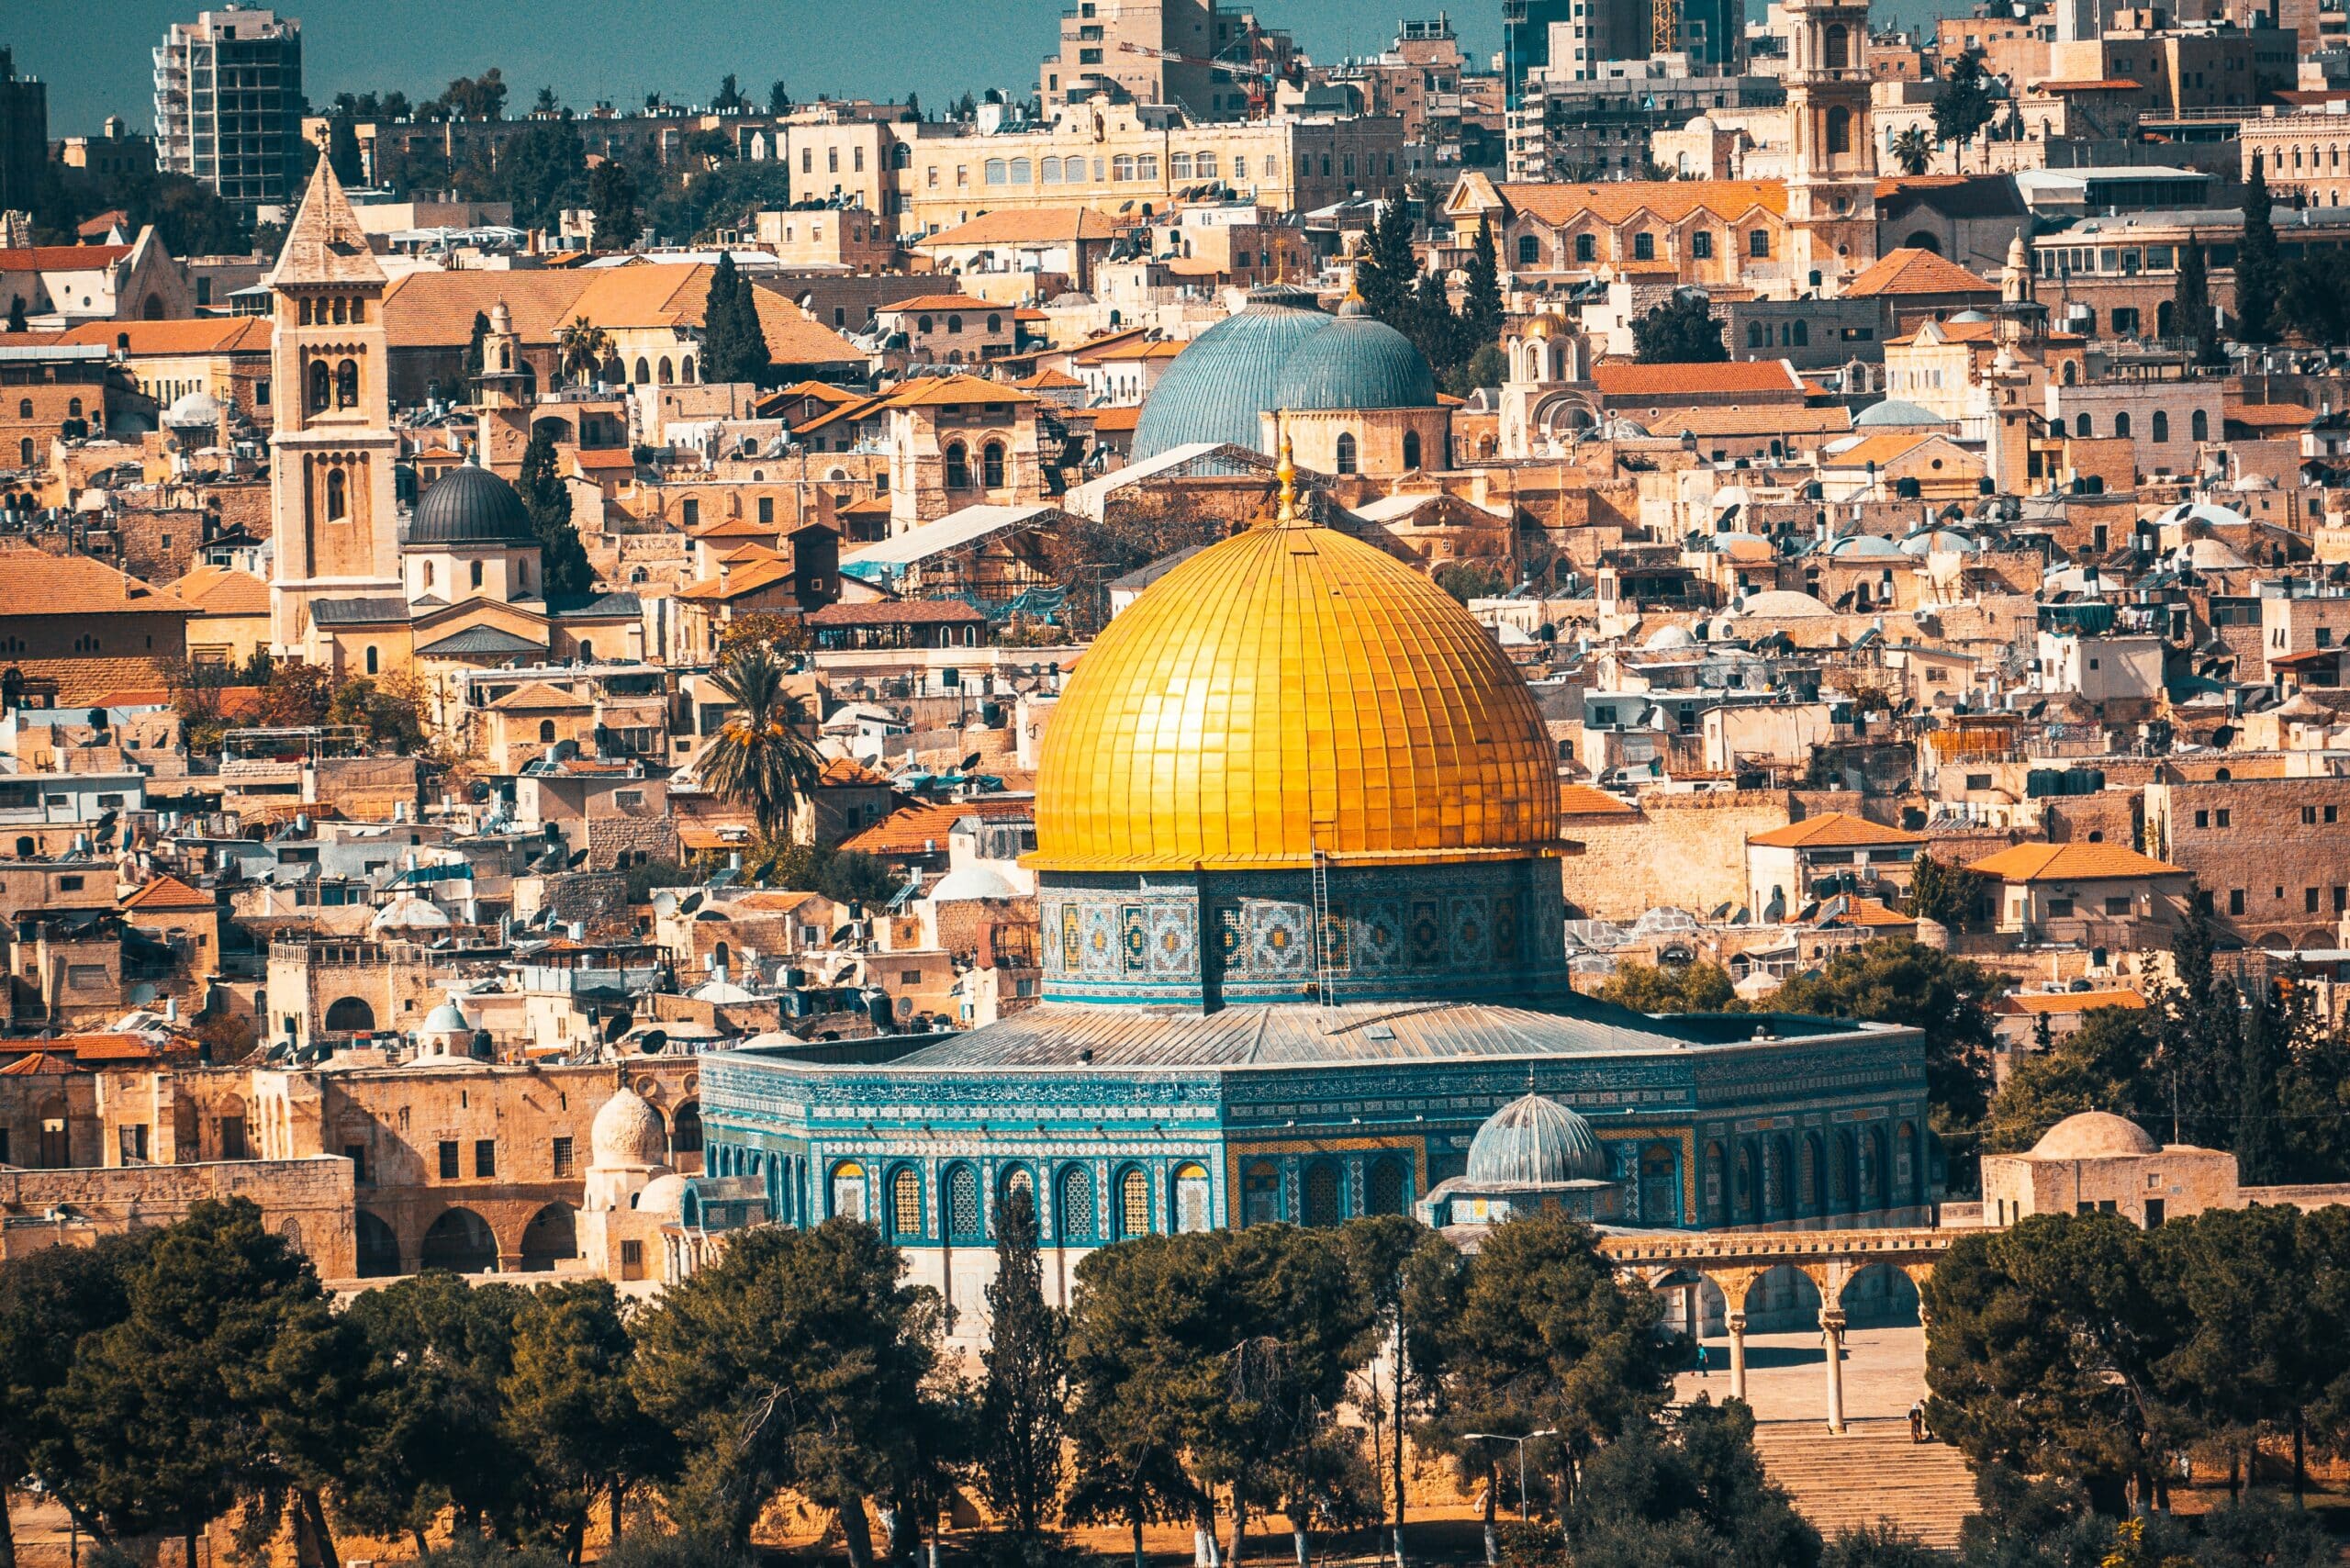 Vista da cidade de Jerusalém, em Israel, durante o dia com várias casas em cores marrom e o Monte do Templo com paredes azuis com a cúpula dourada no meio. Representa chip celular Jerusalém.